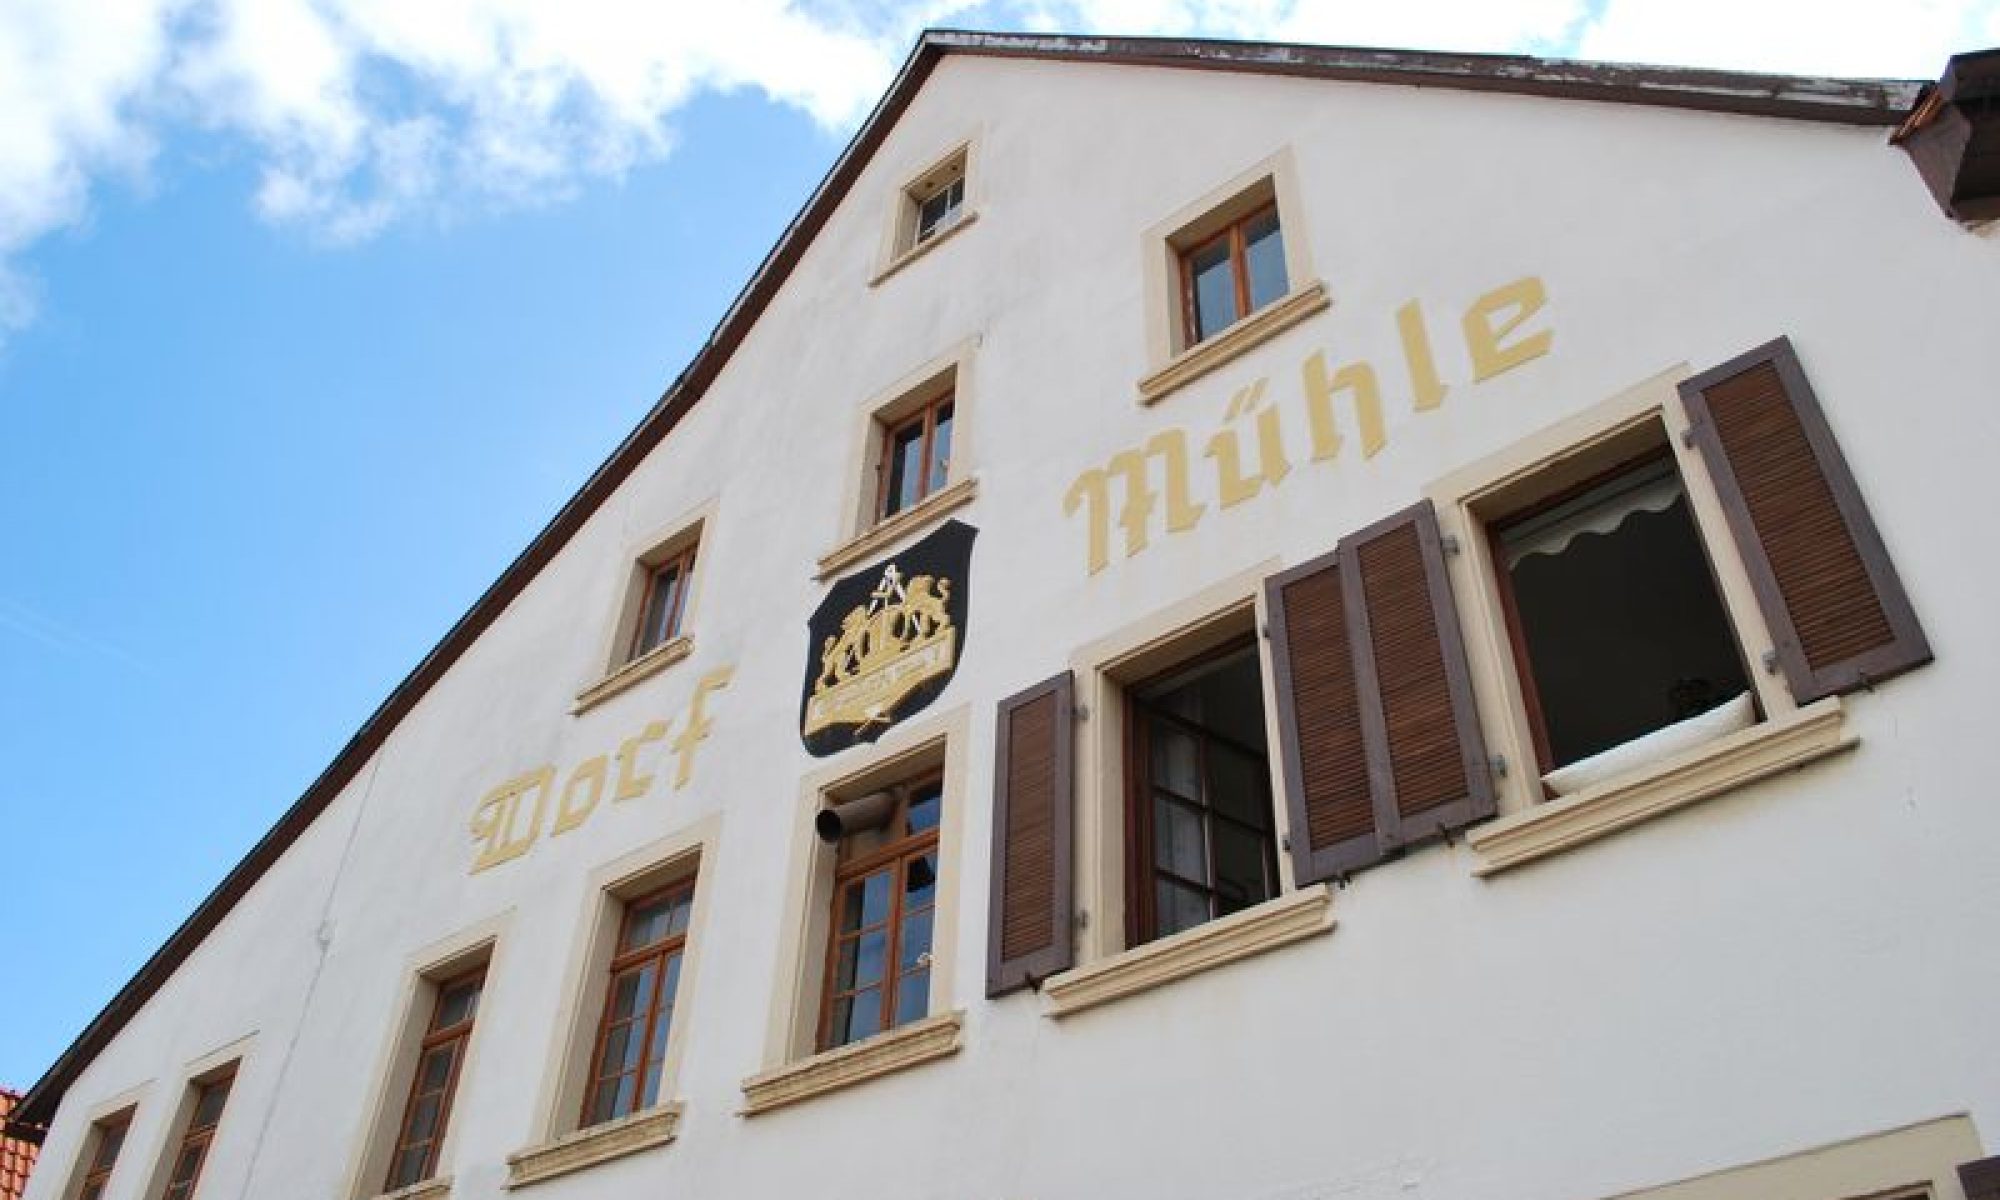 Dorfmühle Edesheim